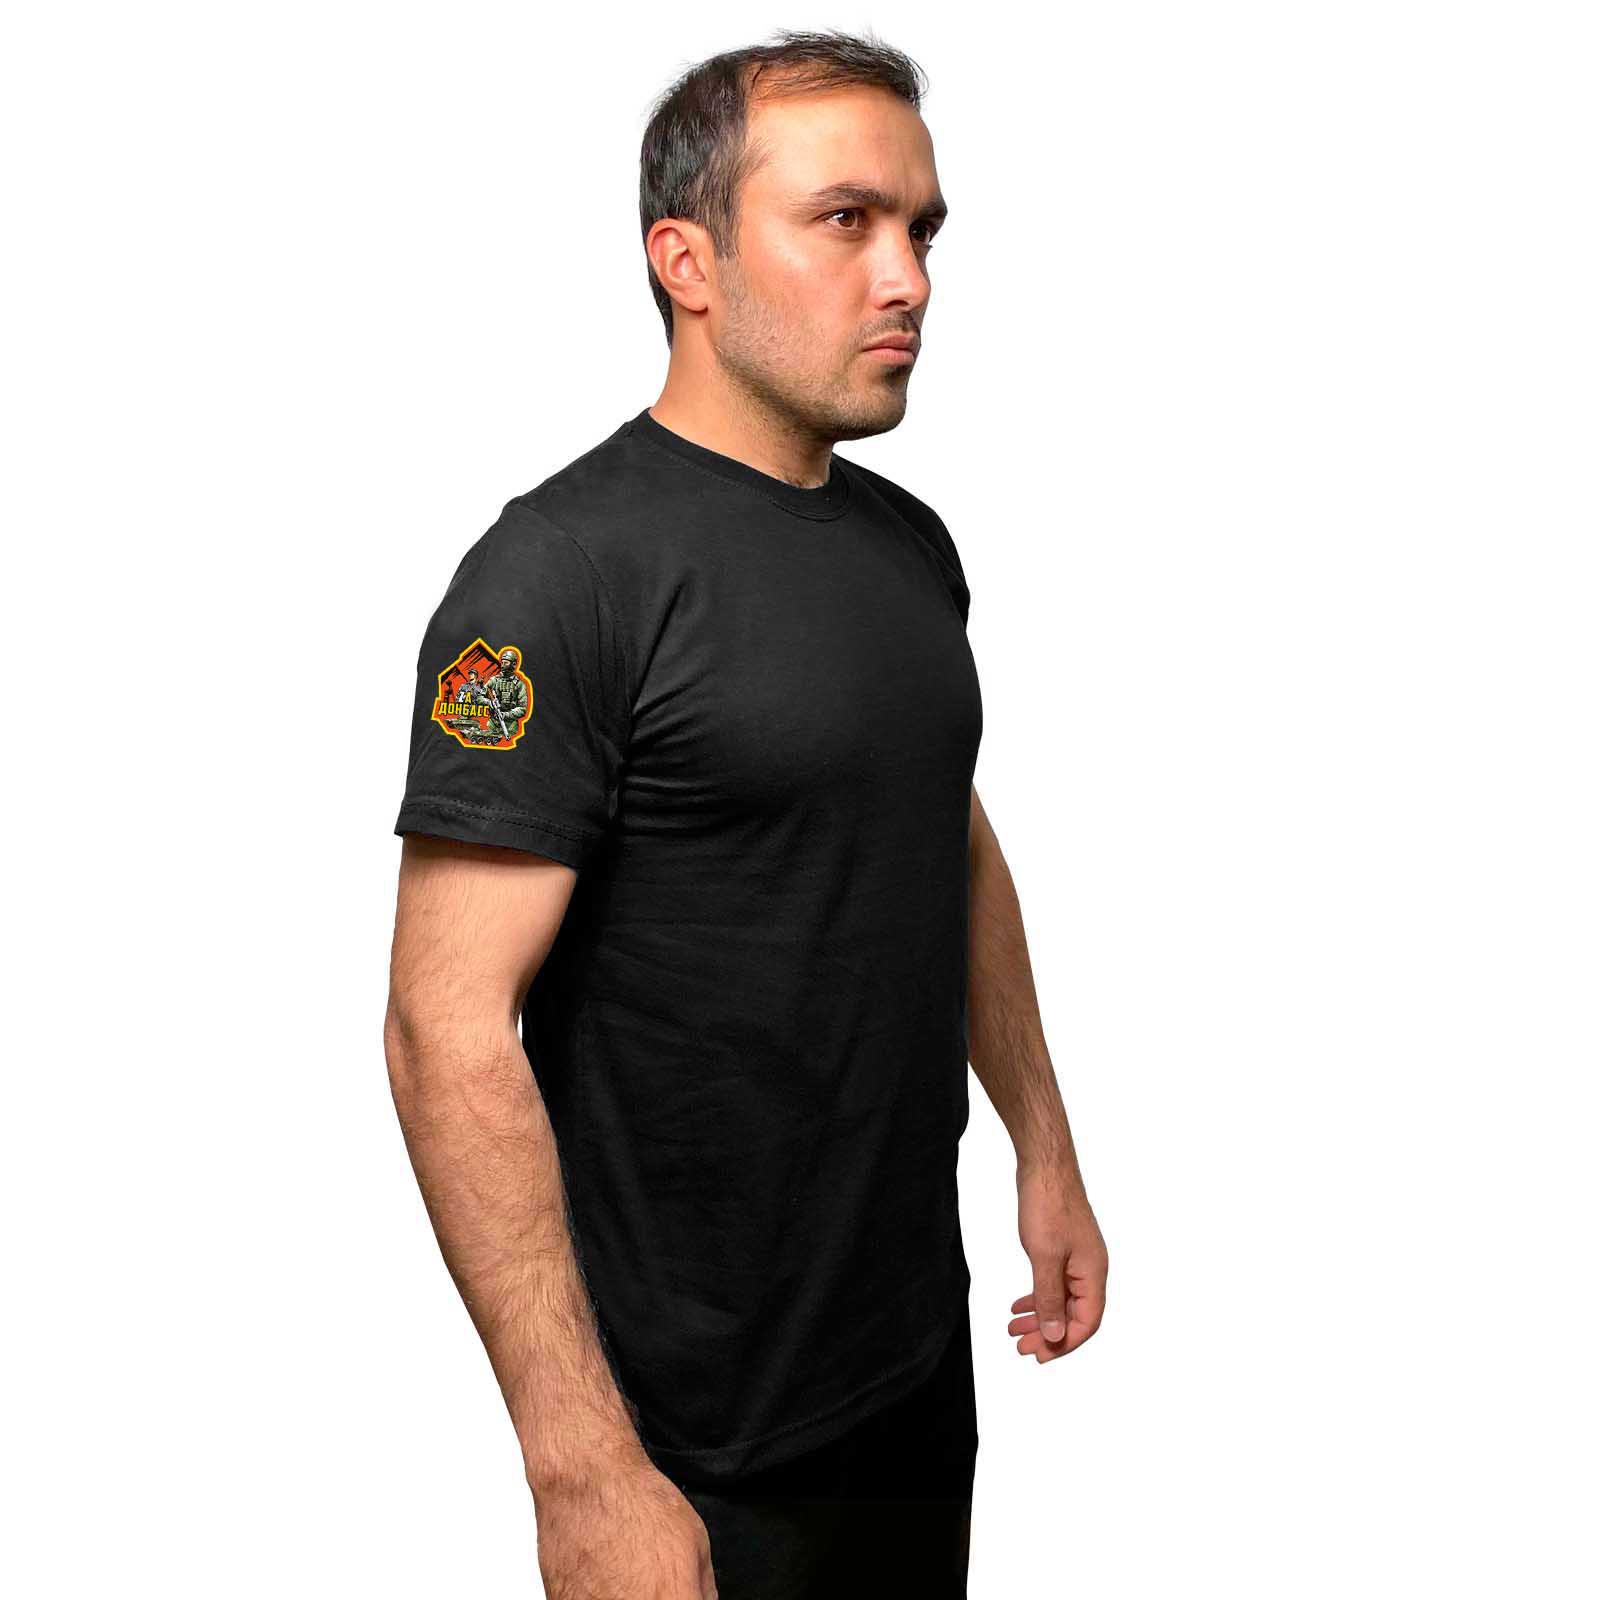 Чёрная футболка с термоаппликацией "Zа Донбасс" на рукаве